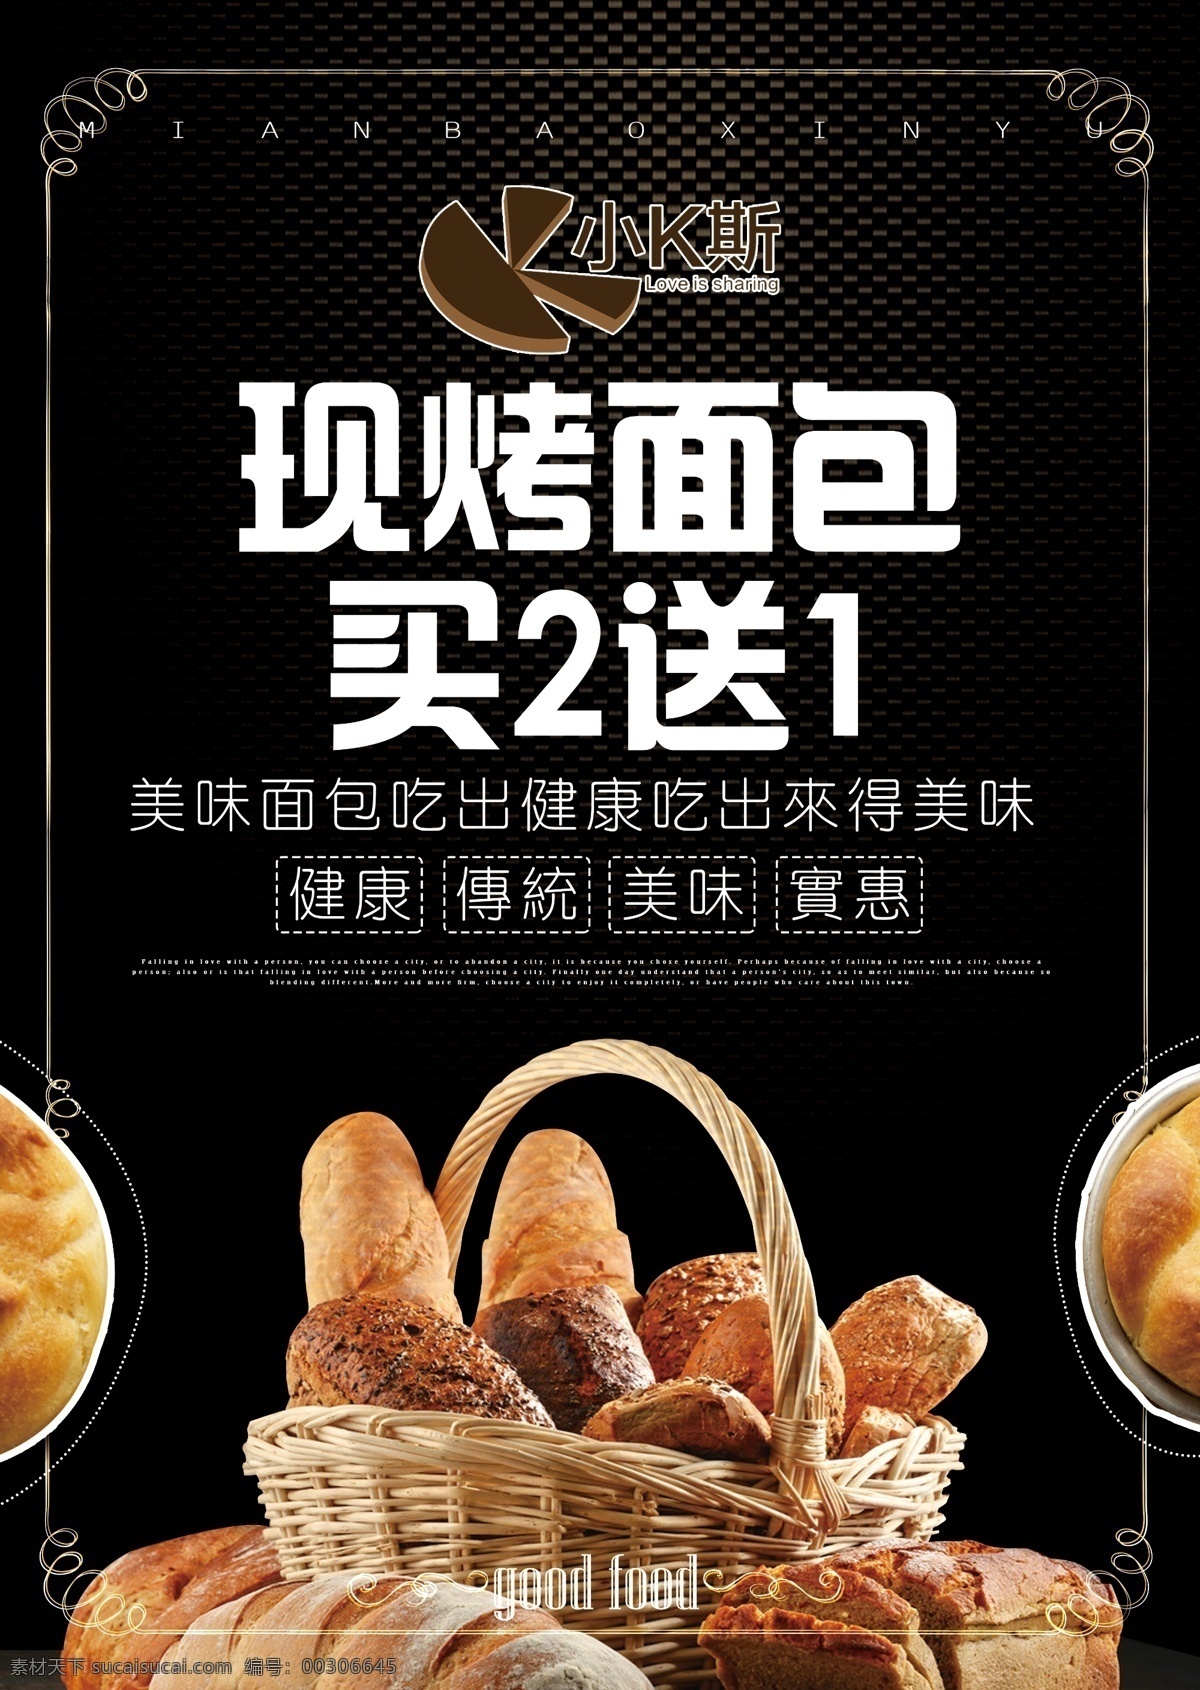 现烤面包 面包的诱惑 面包海报 面包广告 健康饮食 早饭 早餐